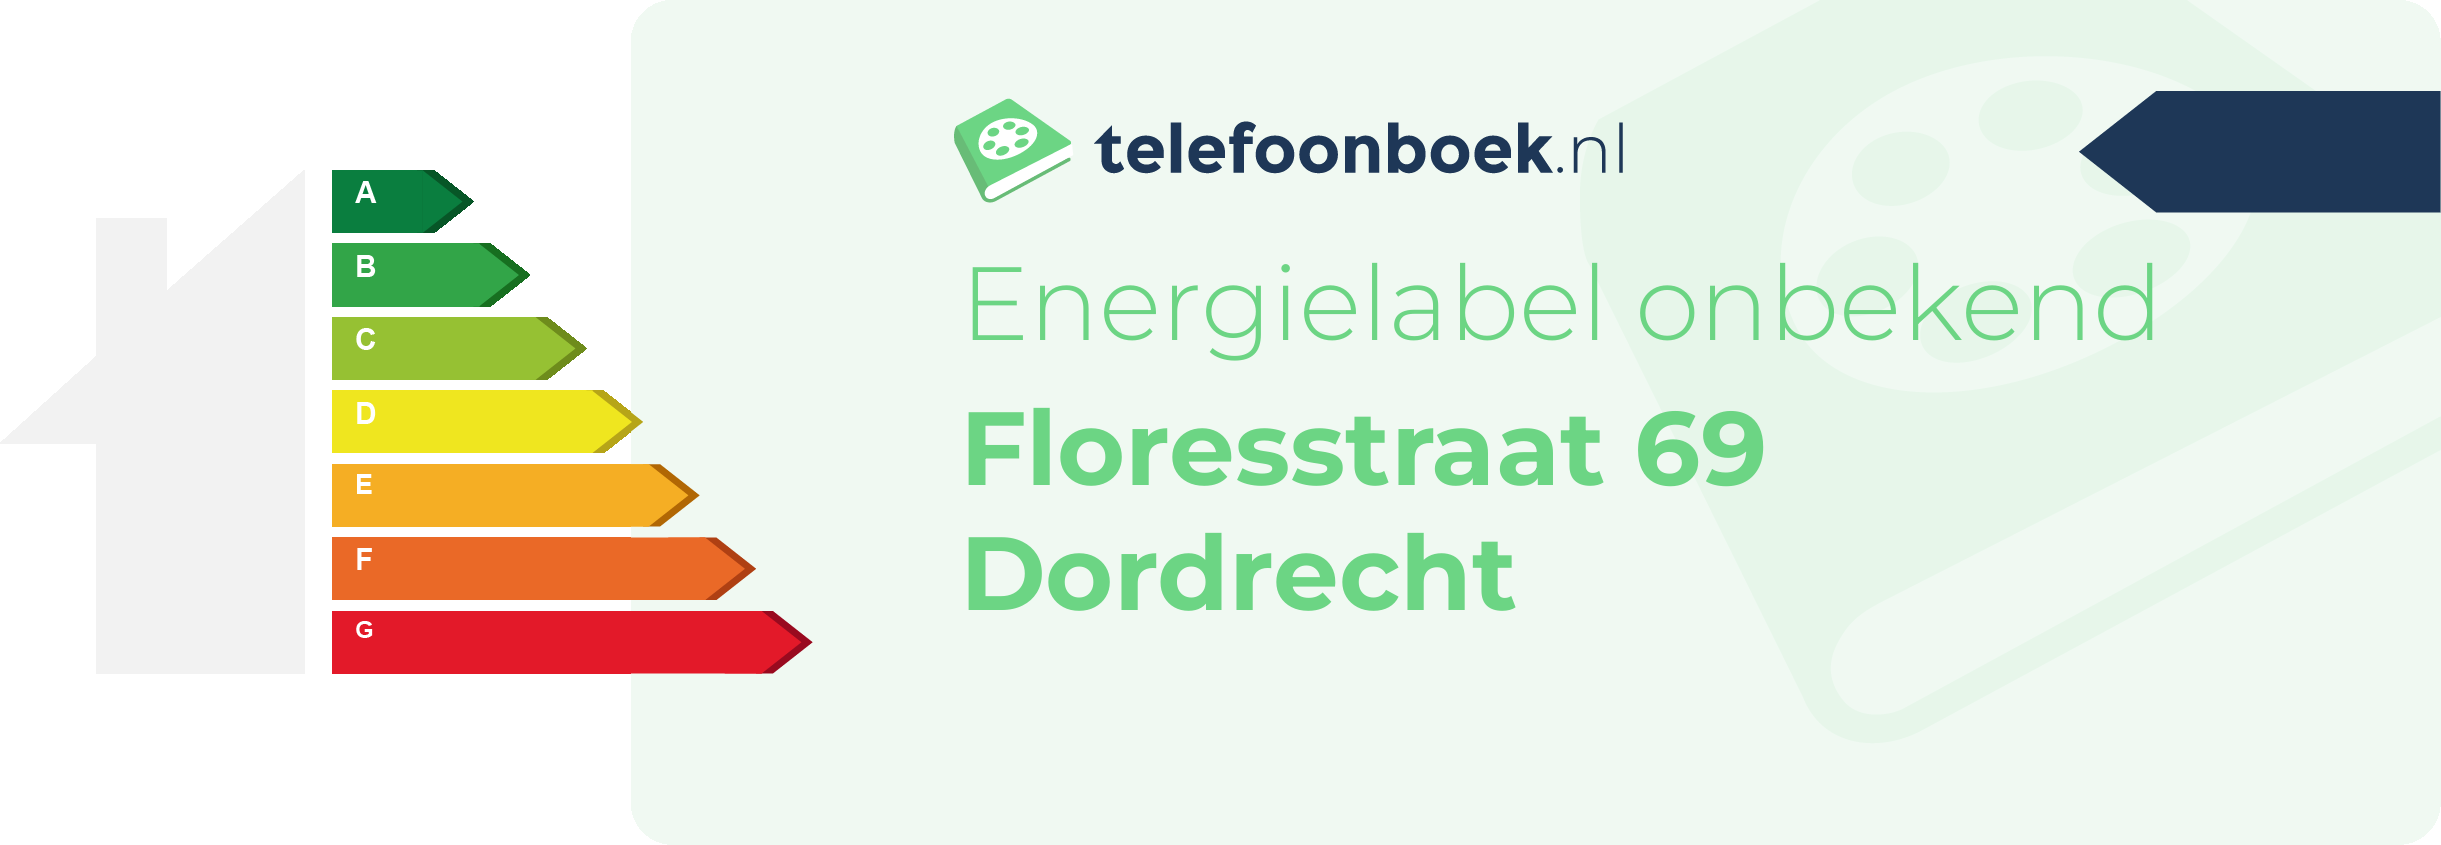 Energielabel Floresstraat 69 Dordrecht